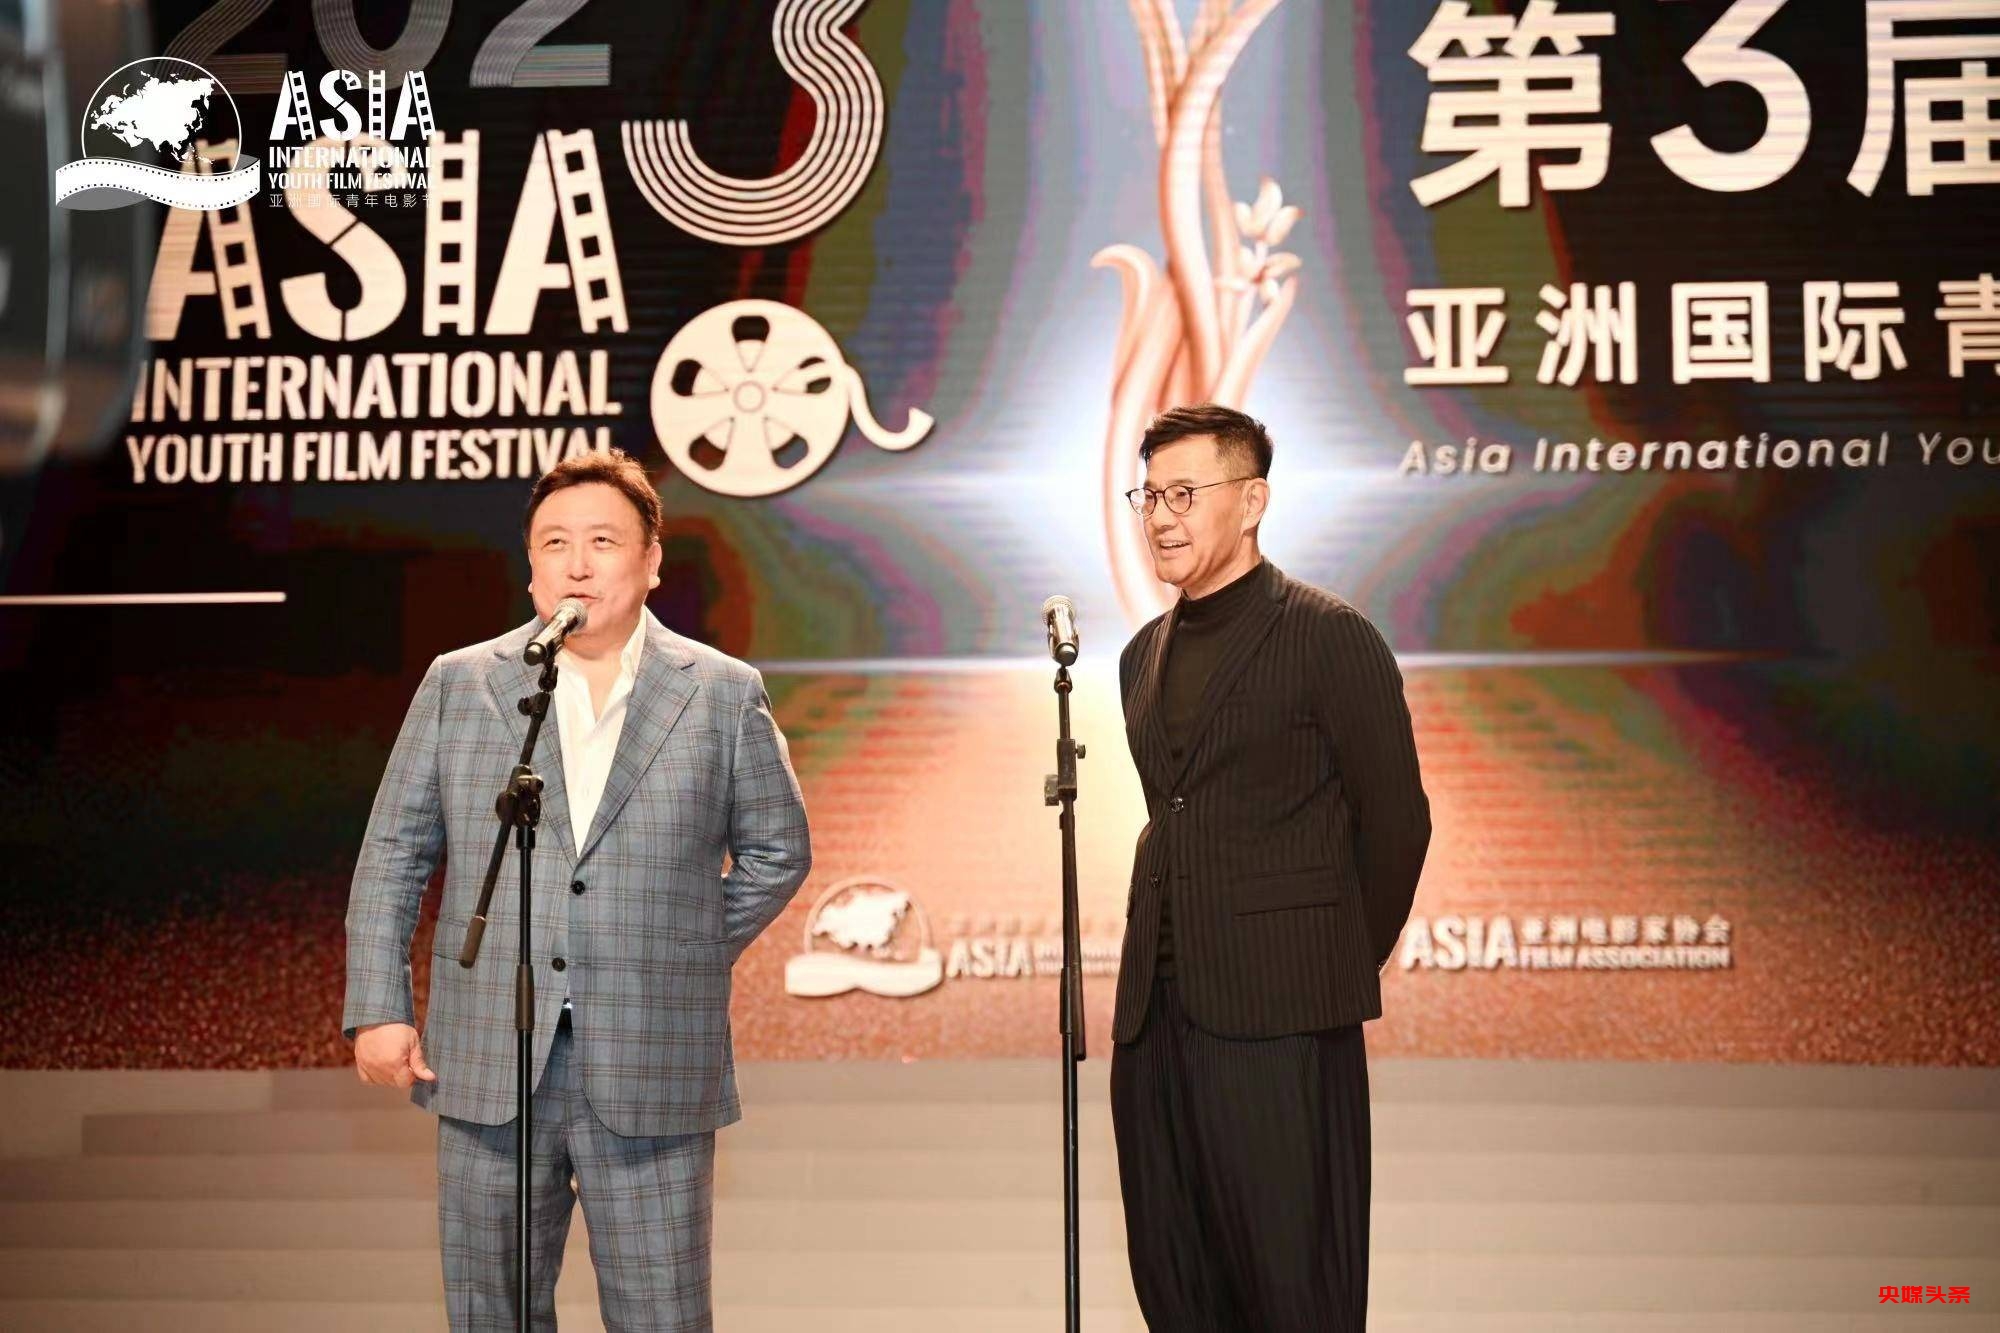 第三届亚洲国际青年电影节在中国香港举行 金兰奖影帝影后揭晓